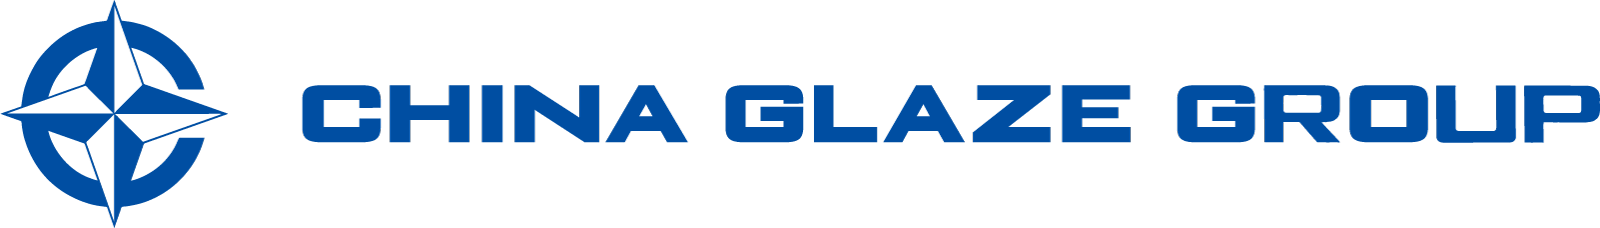 製品紹介ページ、台湾本社のChina Glaze Co., Ltd.（和名：チャイナグレーズ株式会社）はガラス粉末（ガラスフリット）やセラミックスピグメントの製造カンパニーです。各種の導電ペースト用ガラス粉末（ガラスペースト）、自動車LEDライト用蛍光体分散ガラス、プロジェクター用蛍光体分散ガラス、建材デジタルプリントカラー顔料を製造してます。また品質の安定した粒度管理や、繊細なガラス組成管理を行なった製品を量産化供給しております。